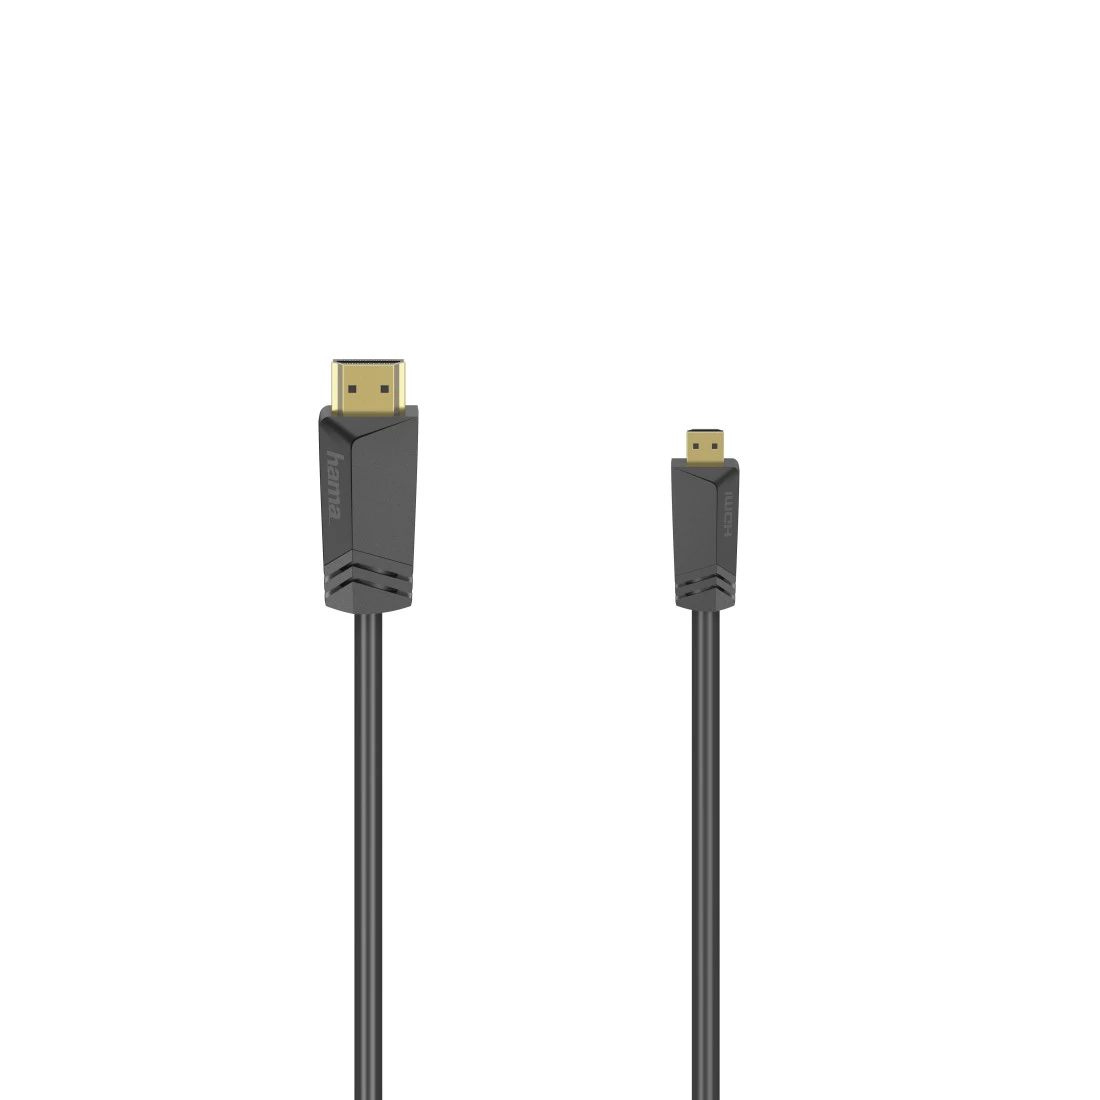 ≡ Конвертер Micro-USB - HDMI, MHL >> Купить по лучшей цене ≡ Отзывы ≡ Гарантия